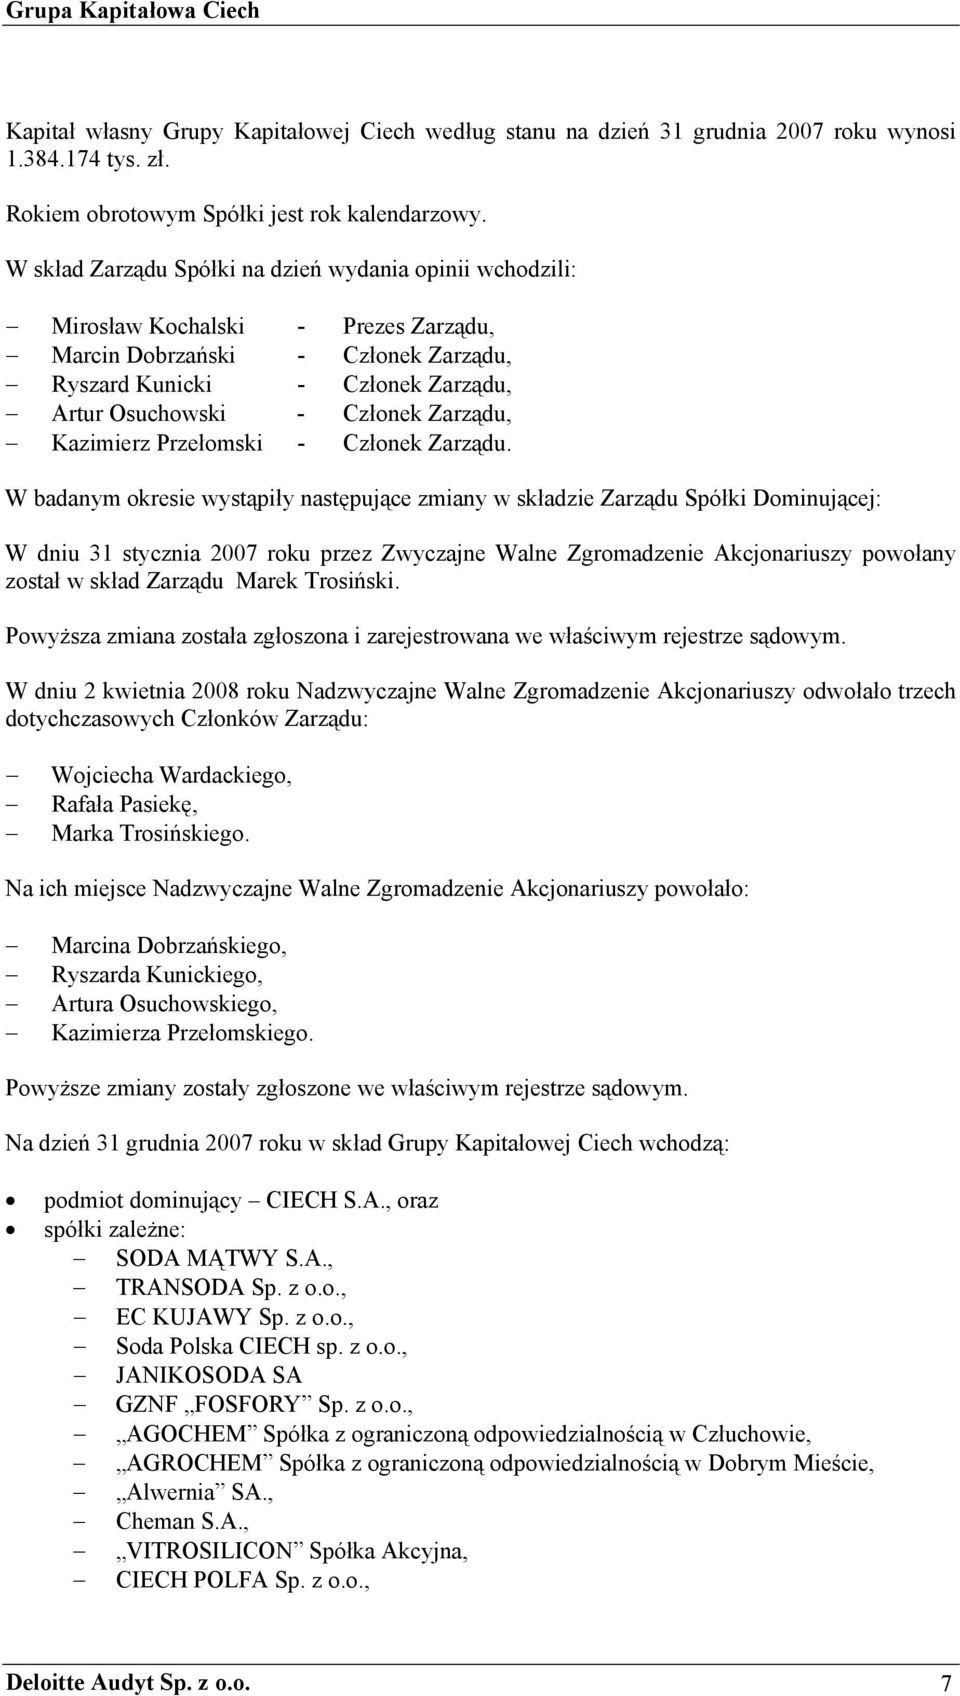 Zarządu, Kazimierz Przełomski - Członek Zarządu.